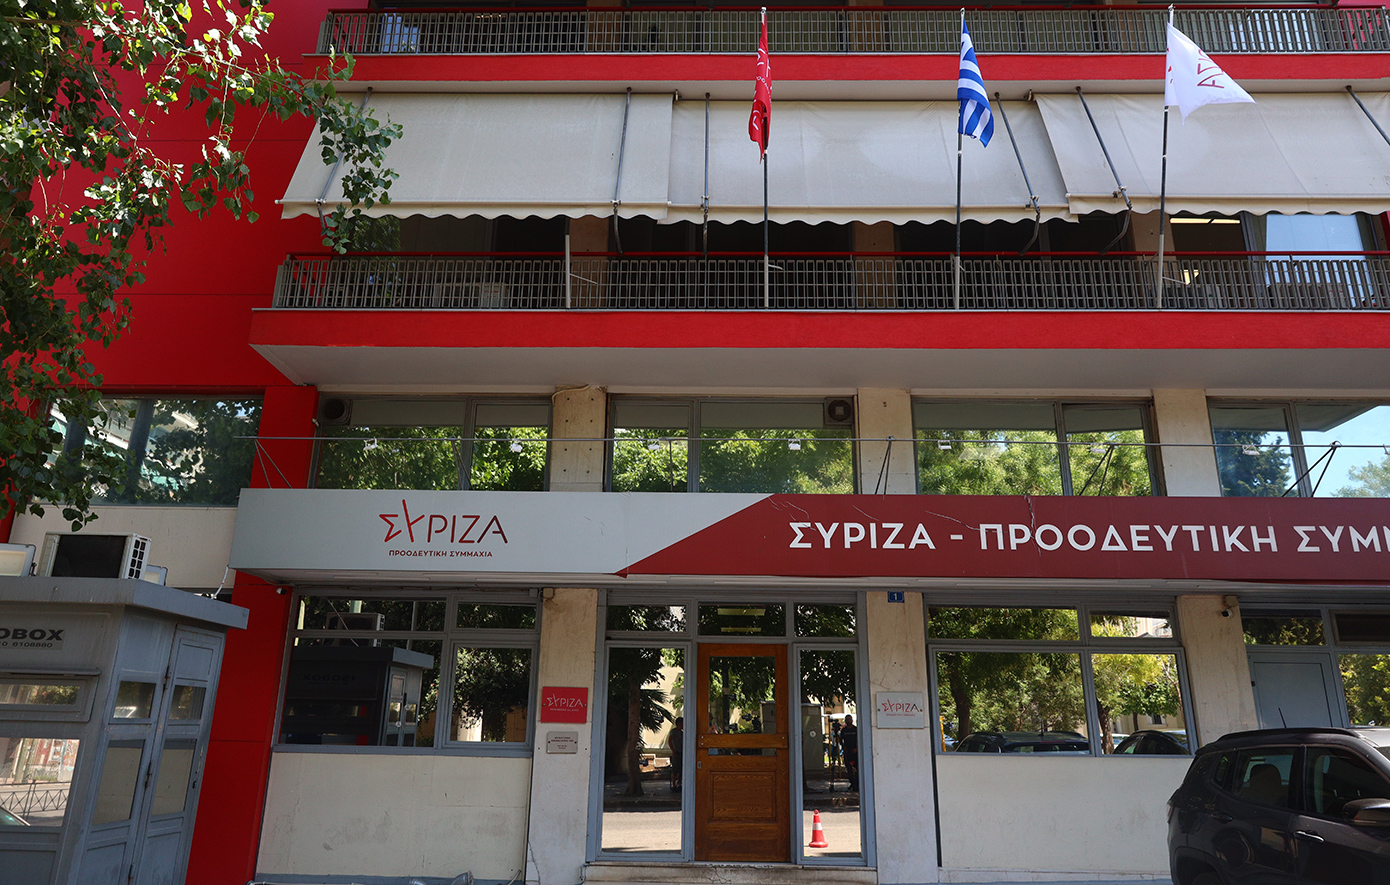 ΣΥΡΙΖΑ: Τα κομματικά μέσα θα χρηματοδοτούνται με το 45% της κρατικής επιχορήγησης